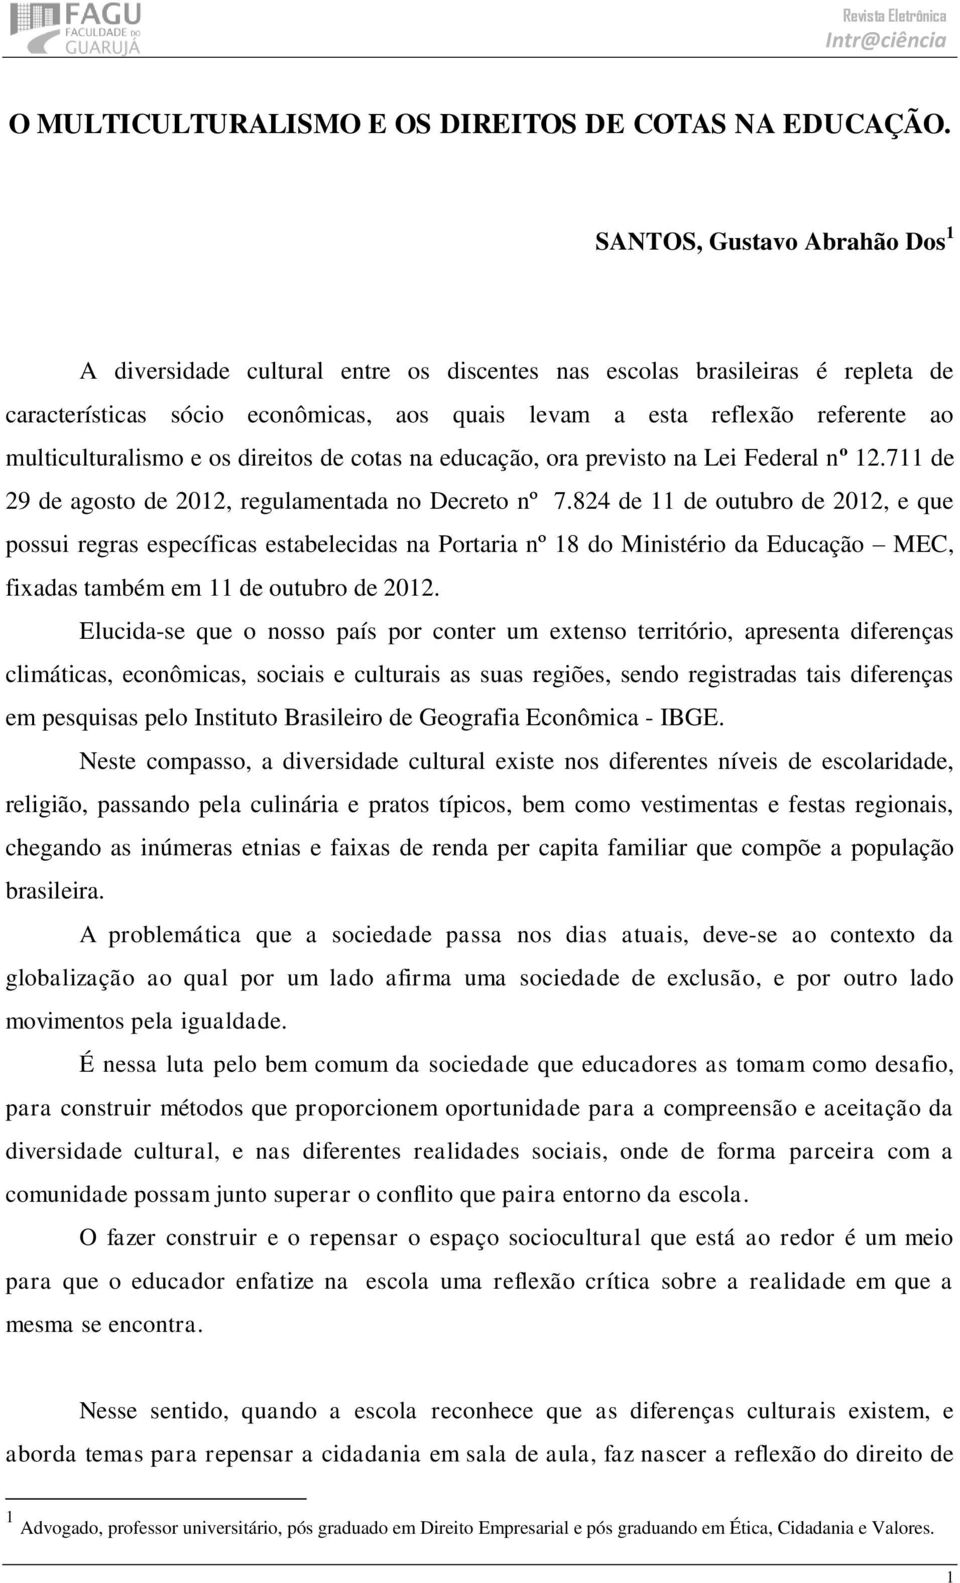 multiculturalismo e os direitos de cotas na educação, ora previsto na Lei Federal nº 12.711 de 29 de agosto de 2012, regulamentada no Decreto nº 7.